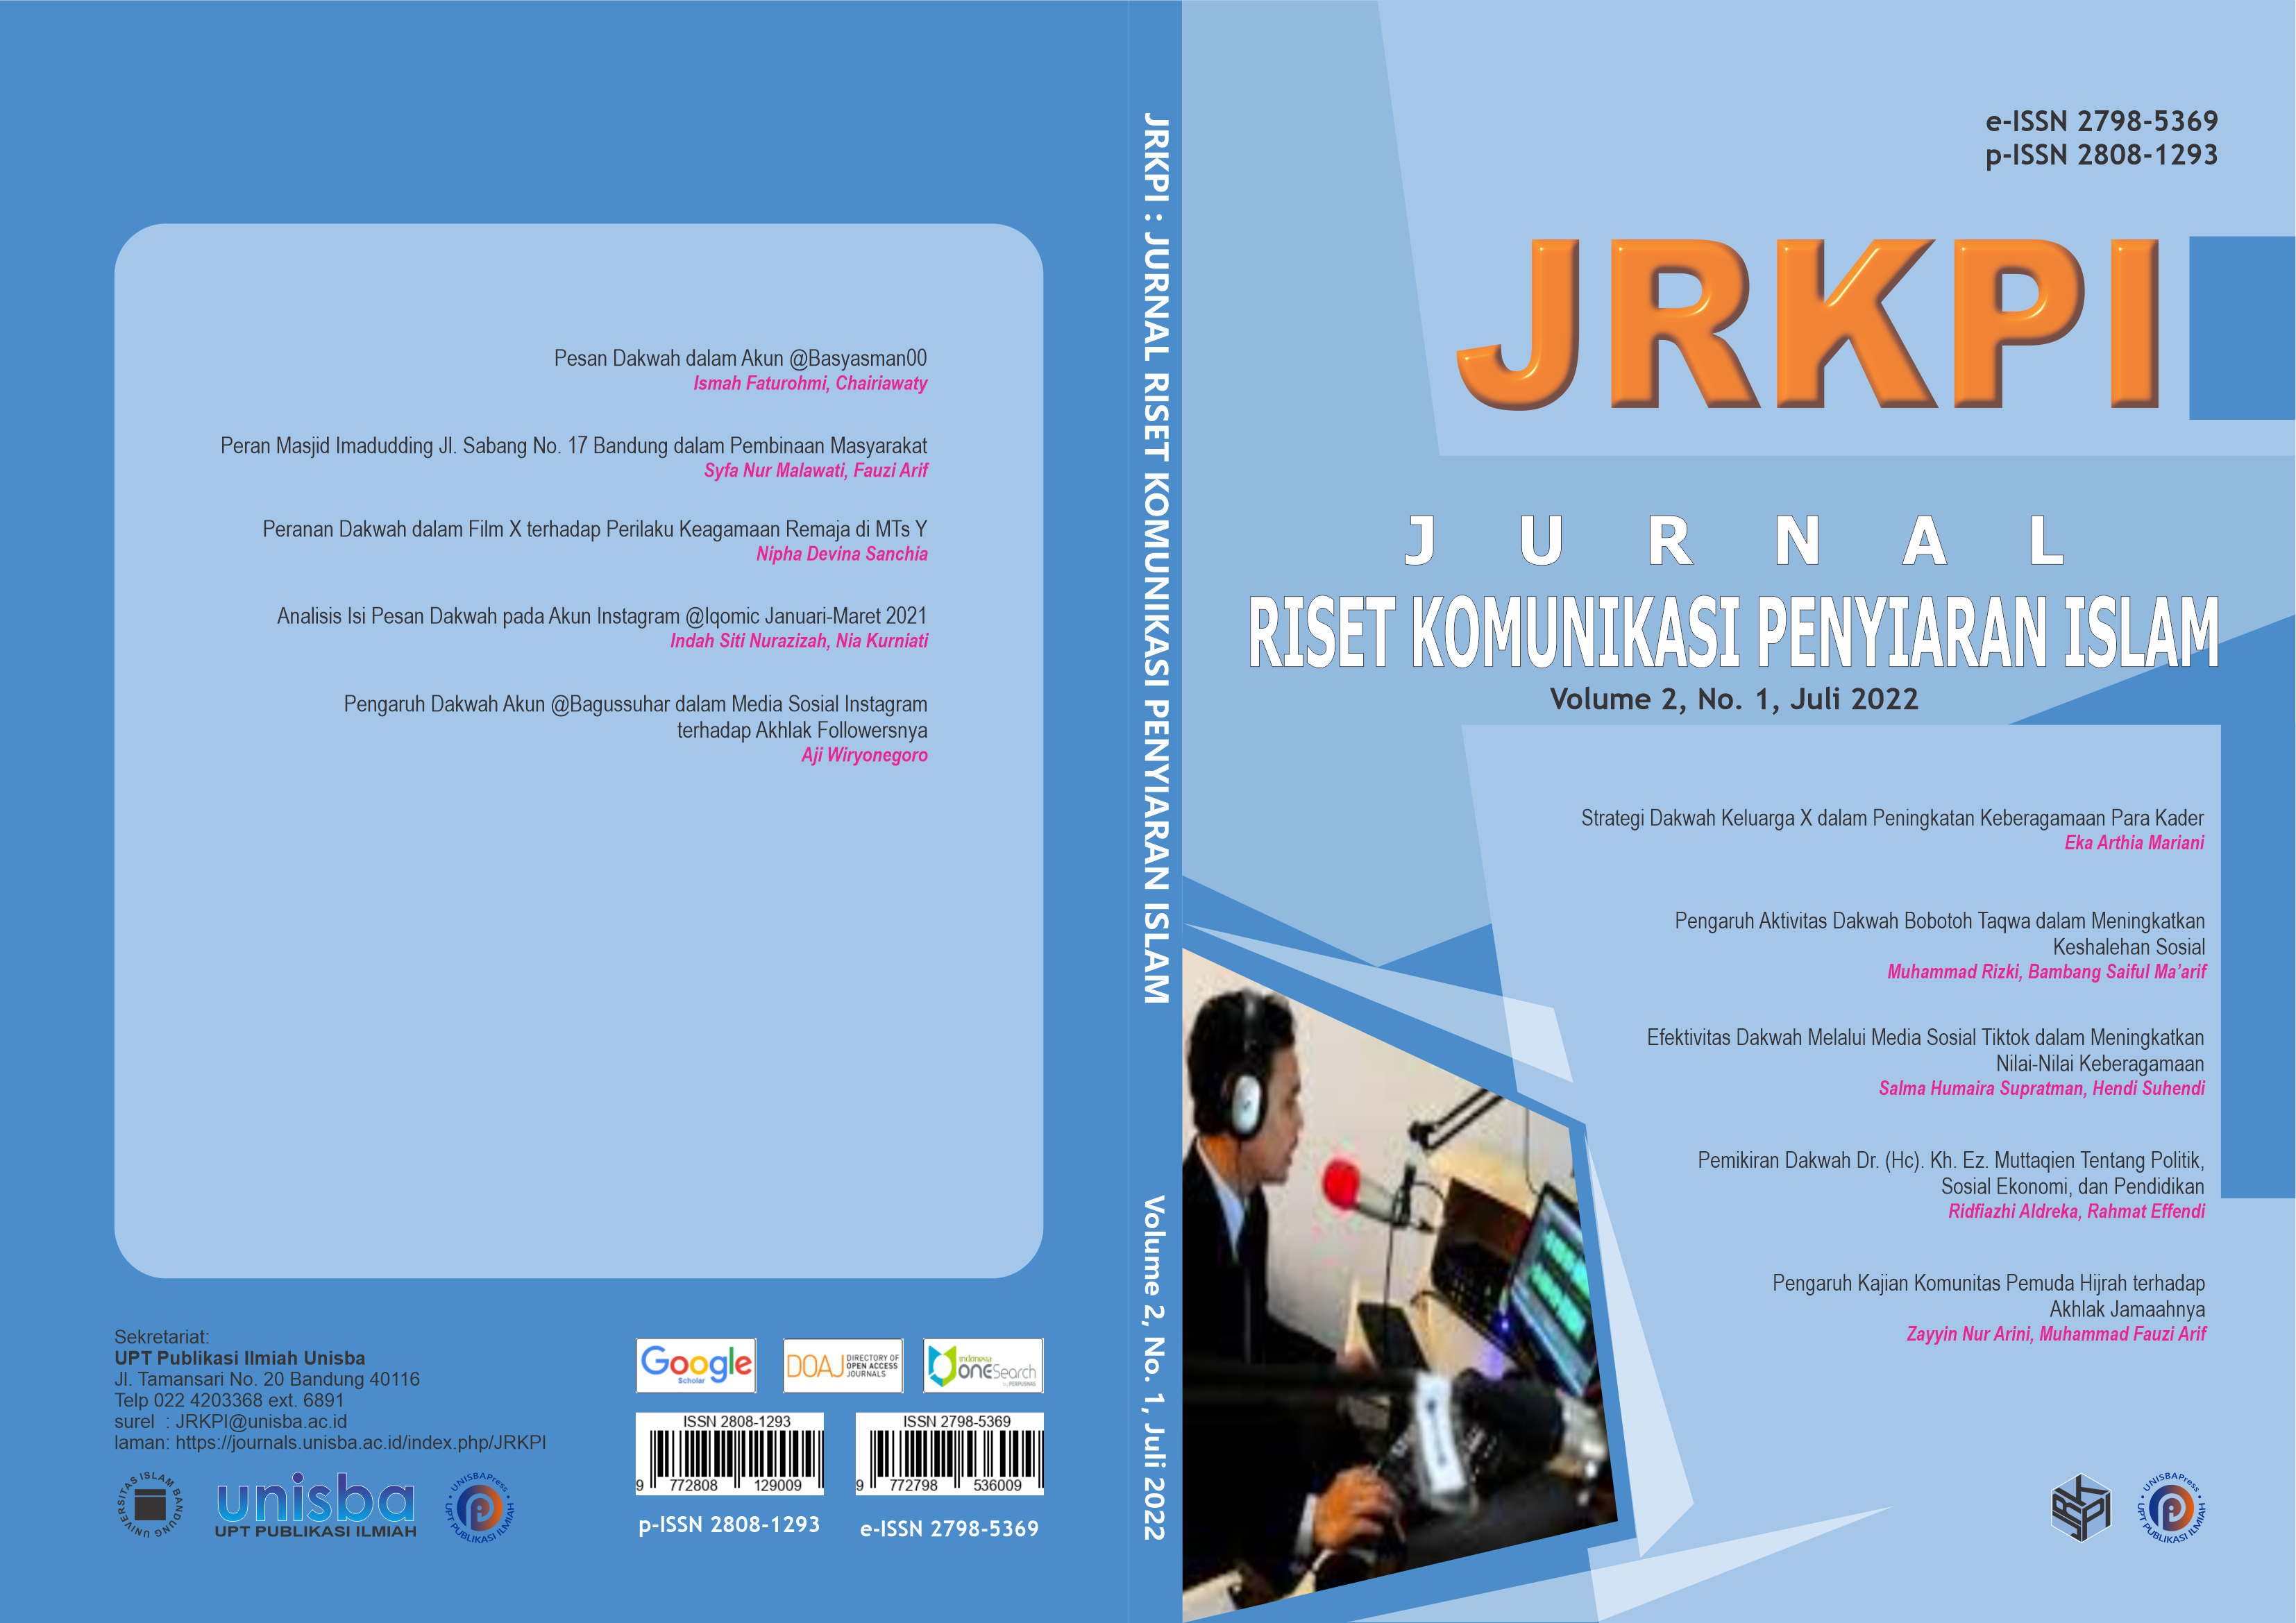 					View Volume 2, No 1, Juli 2022, Jurnal Riset Komunikasi Penyiaran Islam (JRKPI)
				